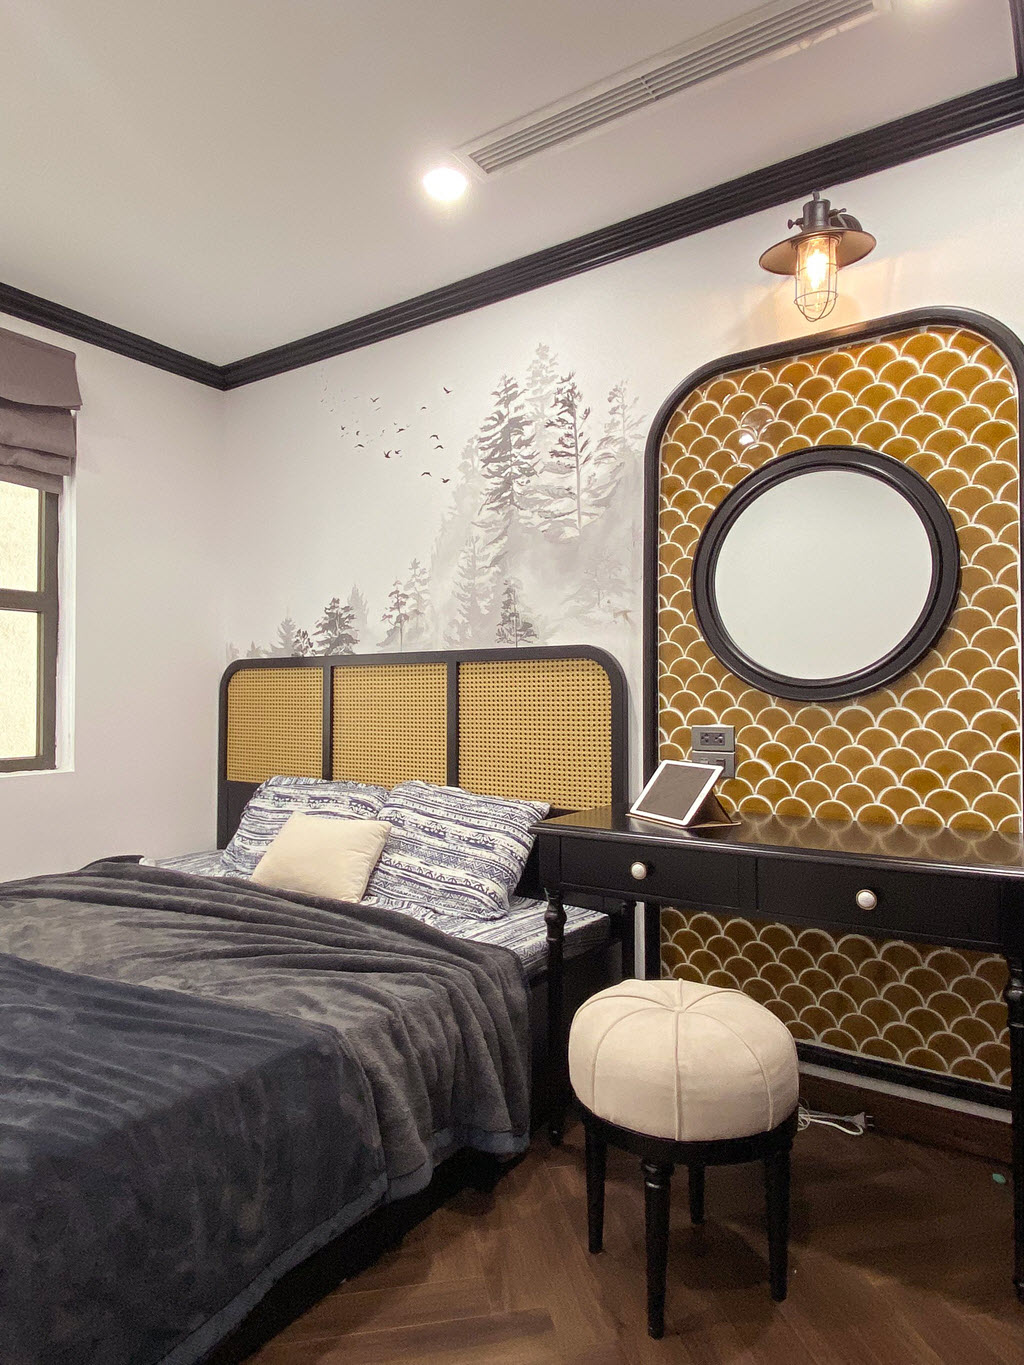 Phòng ngủ master hút mắt với họa tiết vảy cá màu vàng đồng sáng bóng, cạnh đó là tranh tường phong cảnh núi rừng bình yên.